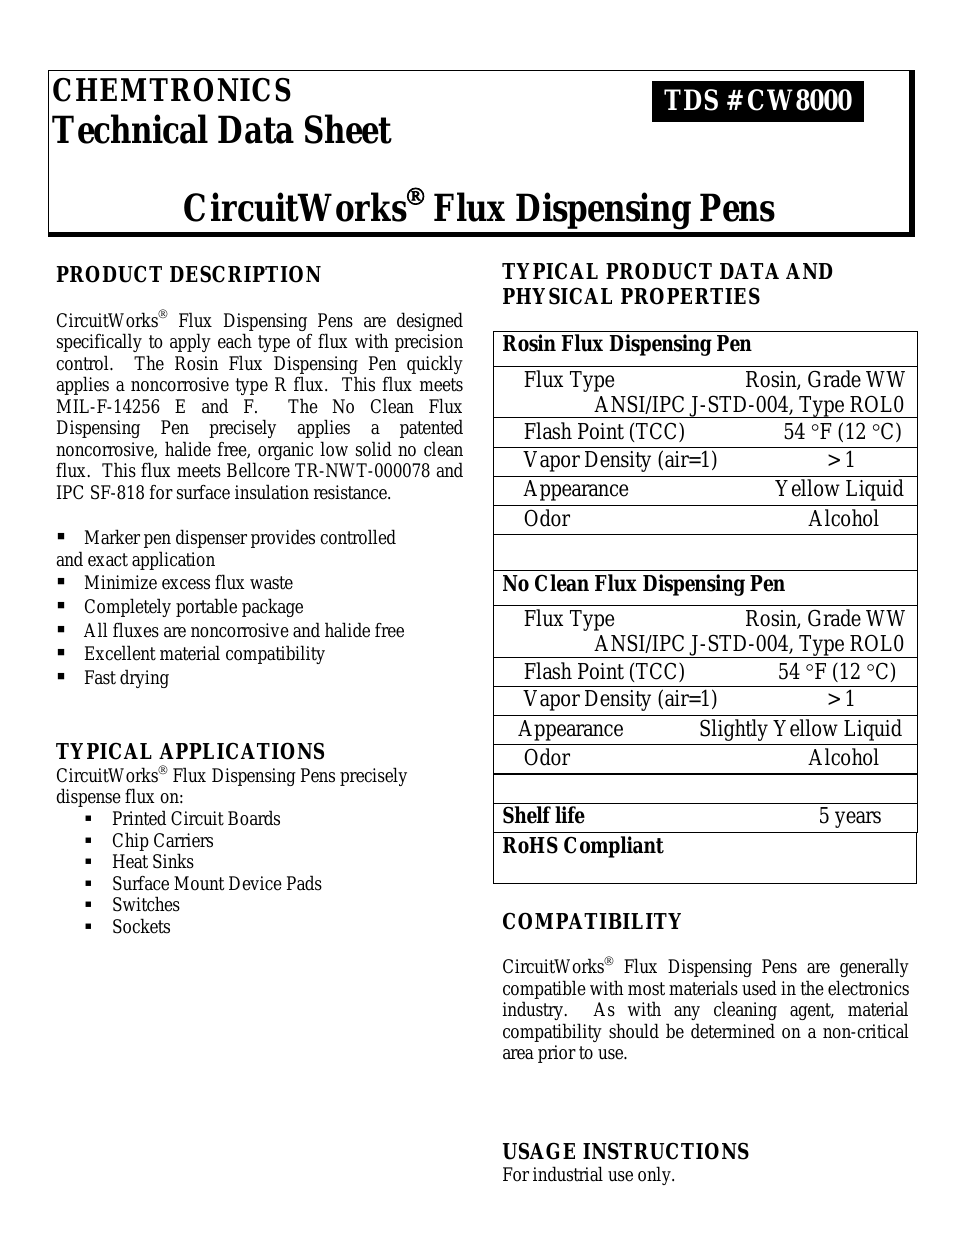 CircuitWorks® Rosin Flux Dispensing Pen CW8200